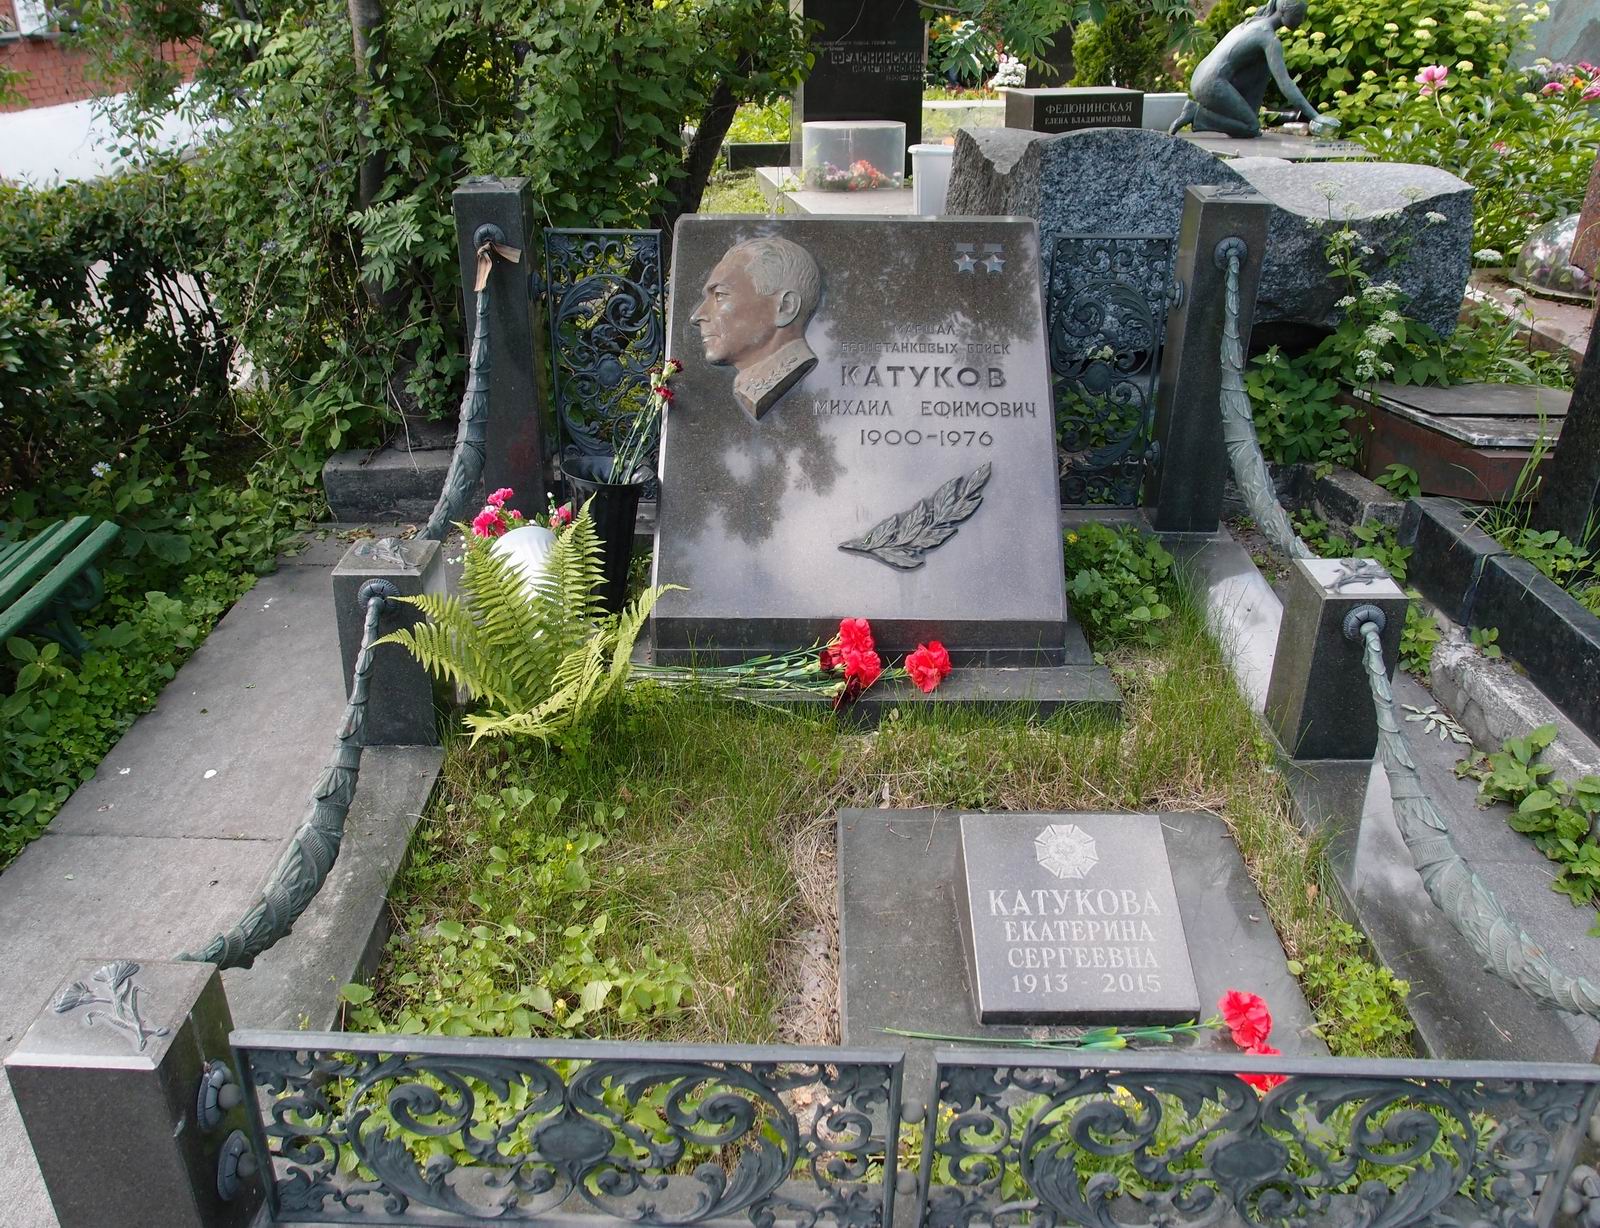 Памятник на могиле Катукова М.Е. (1900-1976), ск. А.Елецкий, на Новодевичьем кладбище (7-11-21).